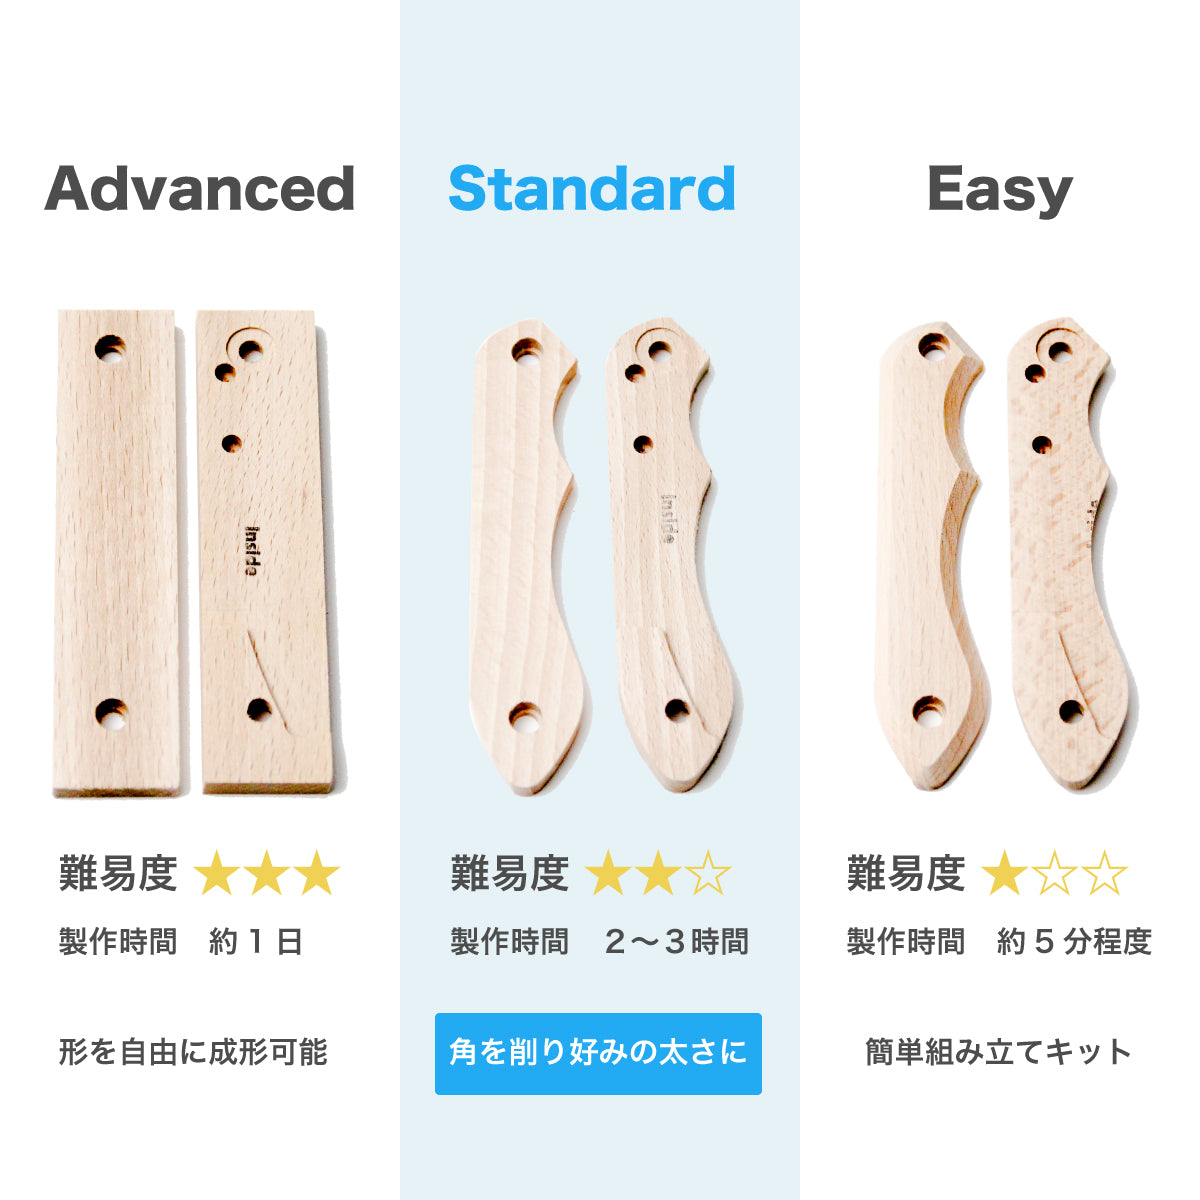 【難易度★★☆】It's my knife Folding Standard (炭素鋼 / 青紙二号) 5,720円